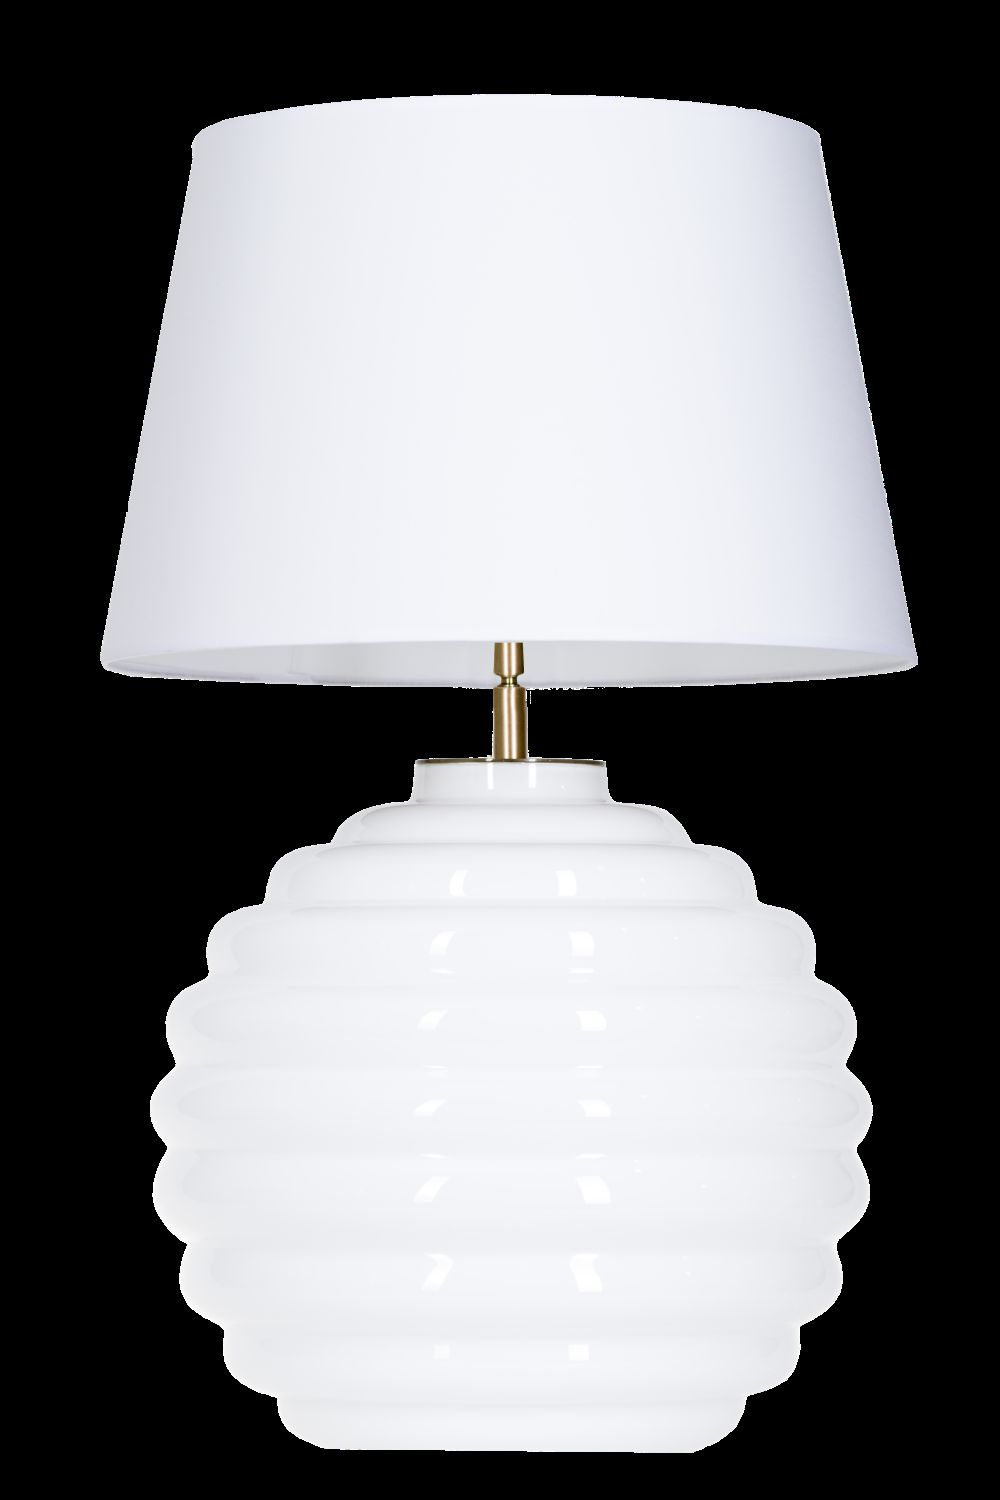 Stylová stolní lampa 4Concepts SAINT TROPEZ white L215922230 - Osvětlení.com